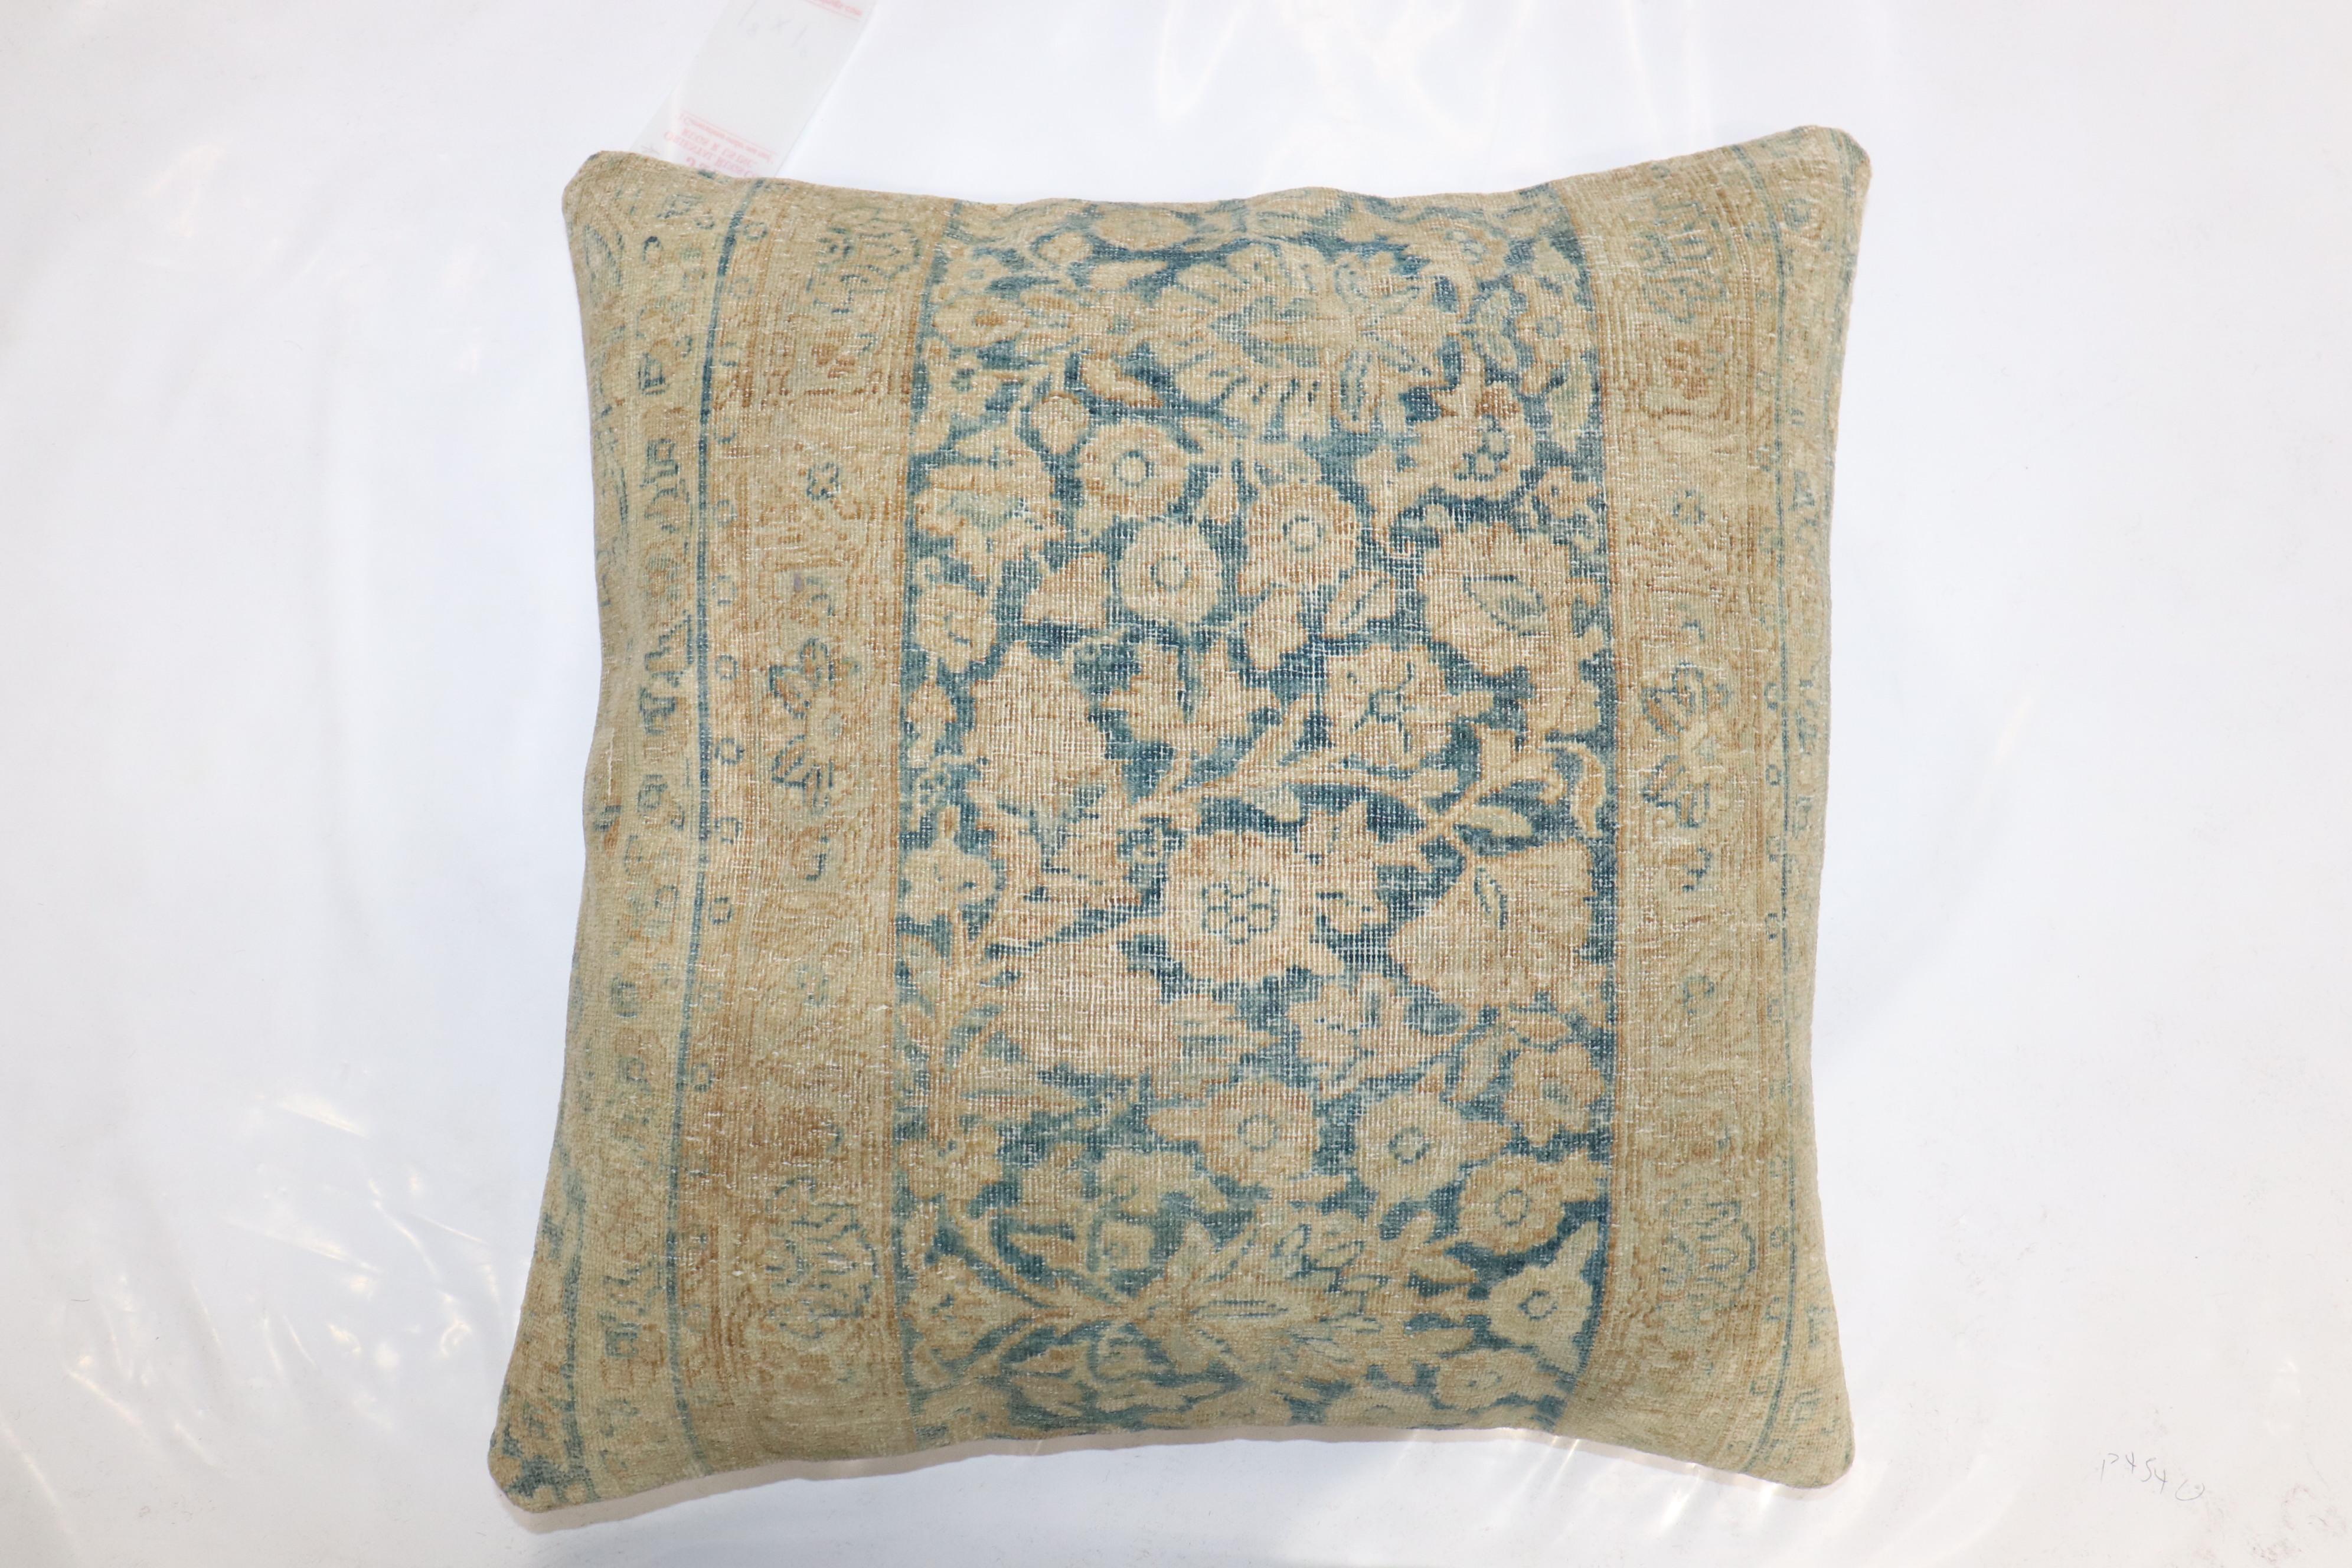 Kissen aus einem persischen Kerman-Teppich aus dem 19. Jahrhundert. Füllungseinsatz und Reißverschluss vorhanden

Maße: 20